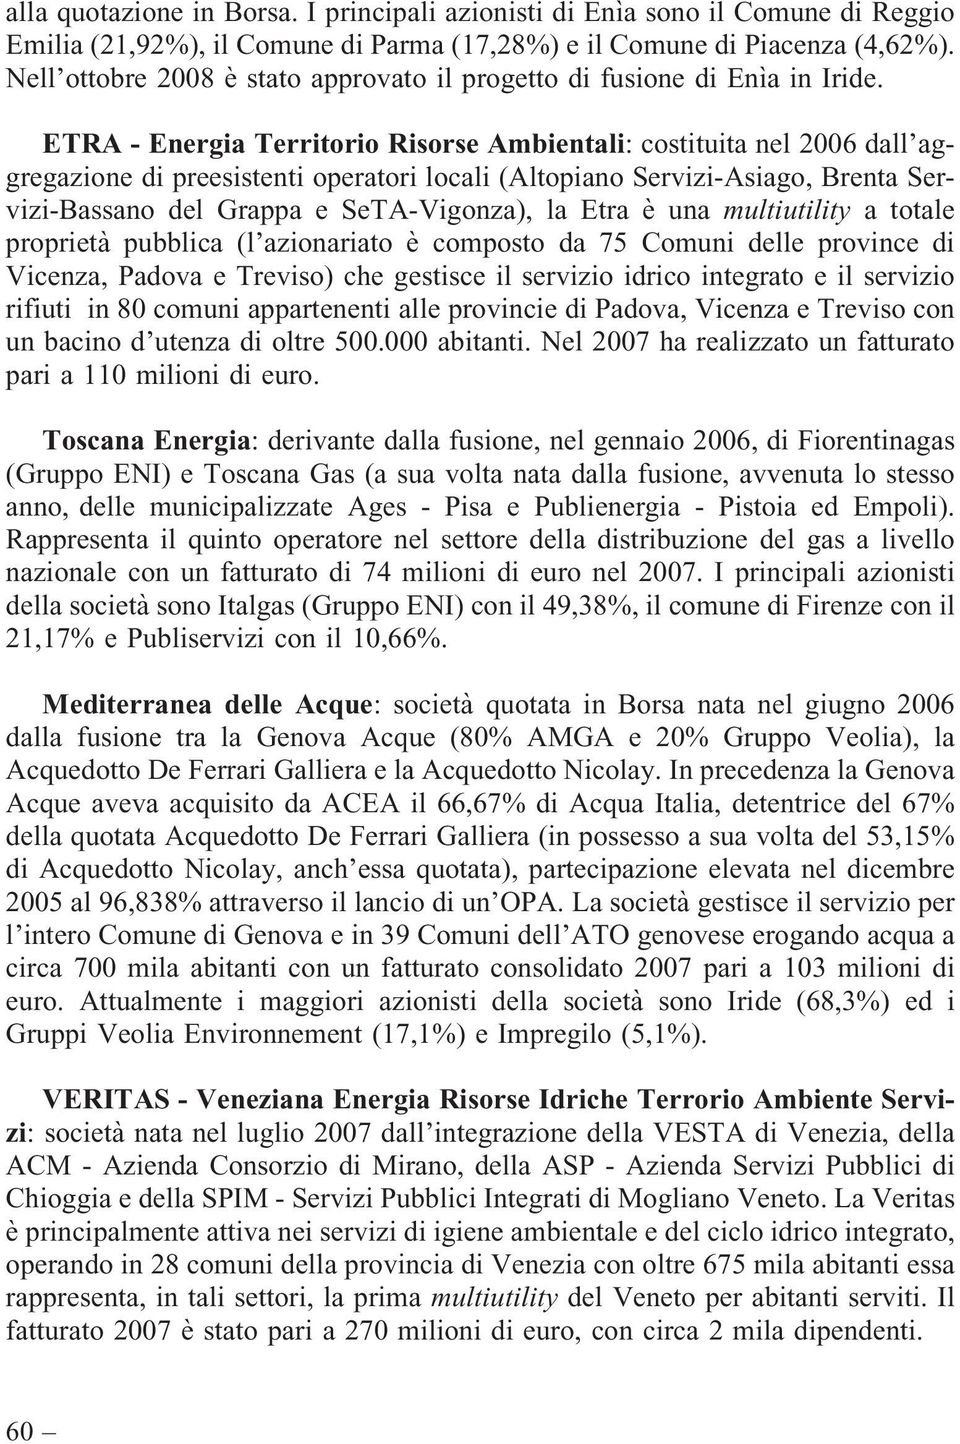 ETRA - Energia Territorio Risorse Ambientali: costituita nel 2006 dall aggregazione di preesistenti operatori locali (Altopiano Servizi-Asiago, Brenta Servizi-Bassano del Grappa e SeTA-Vigonza), la